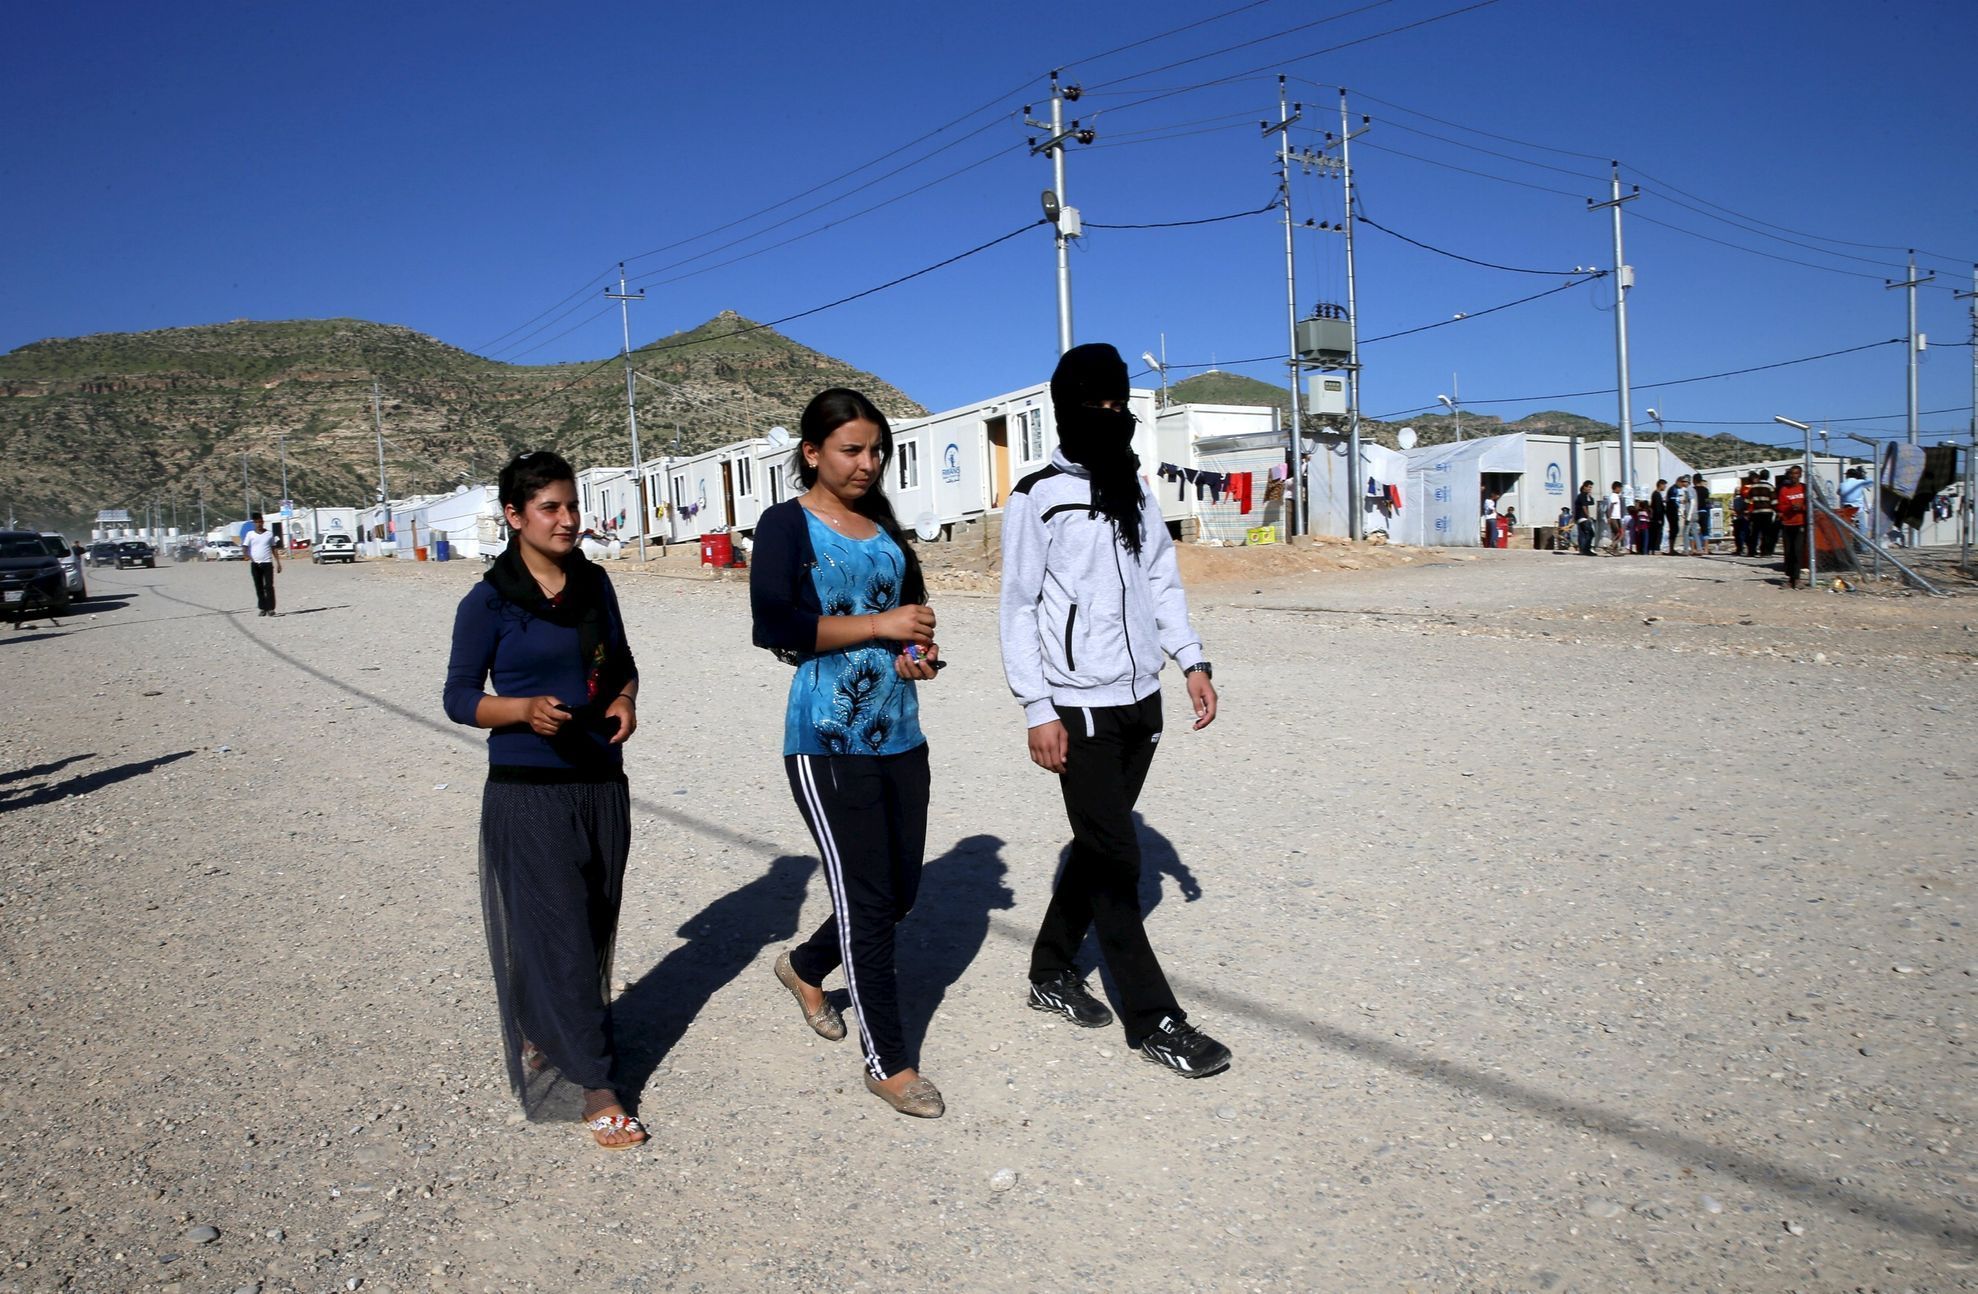 Šestnáctiletý jezídský hoch, který utekl Islámskému státu